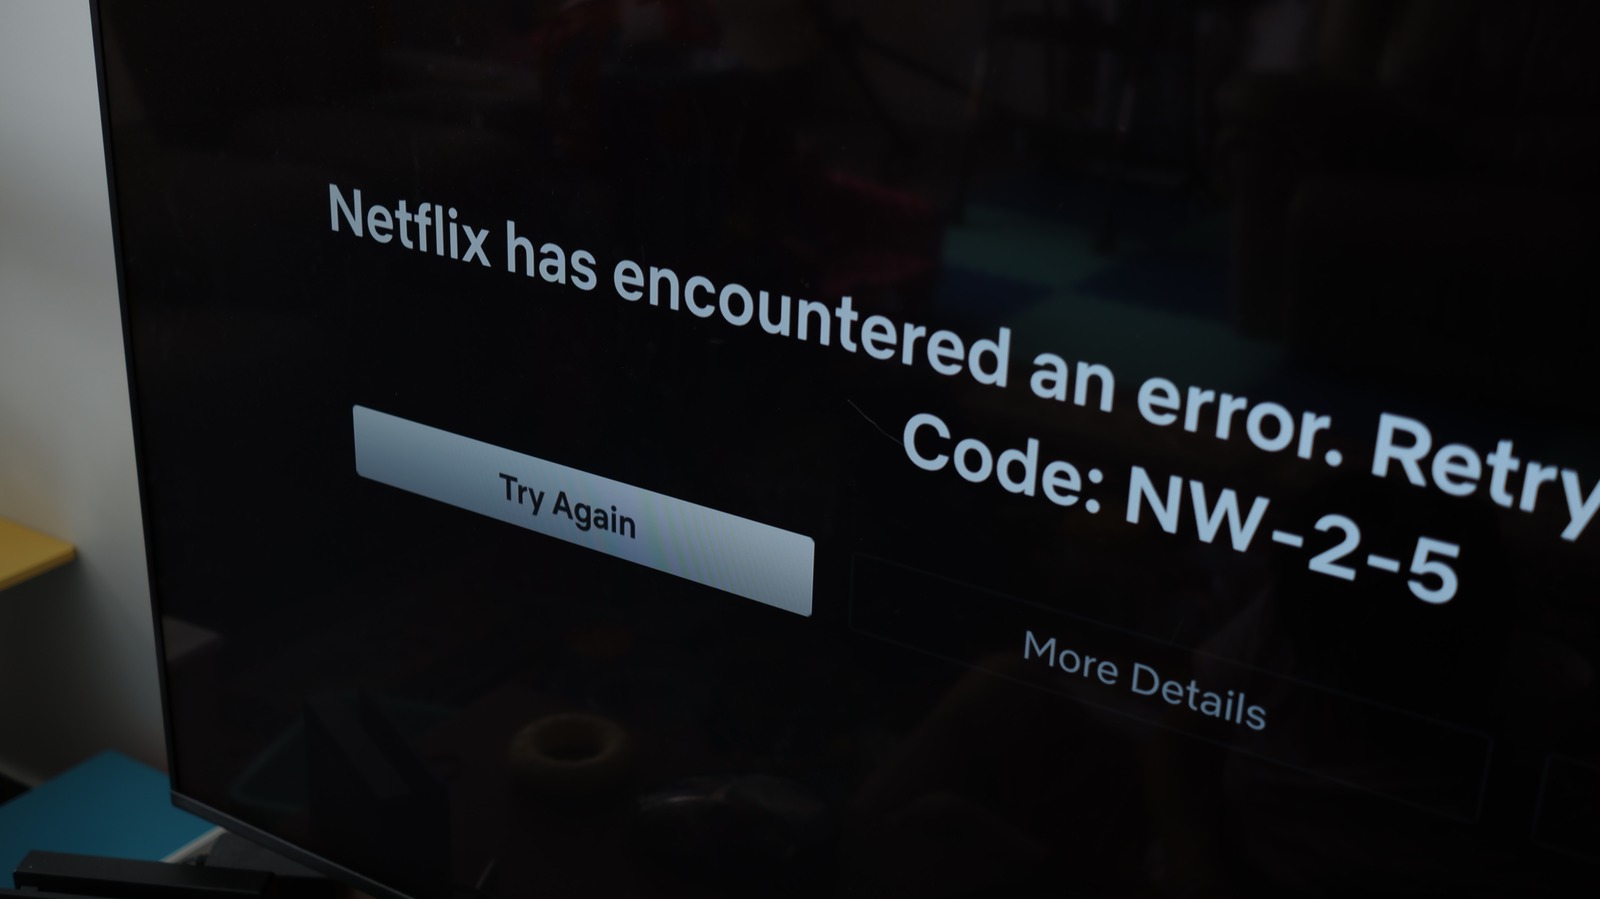 Erro NW-2-5 da Netflix